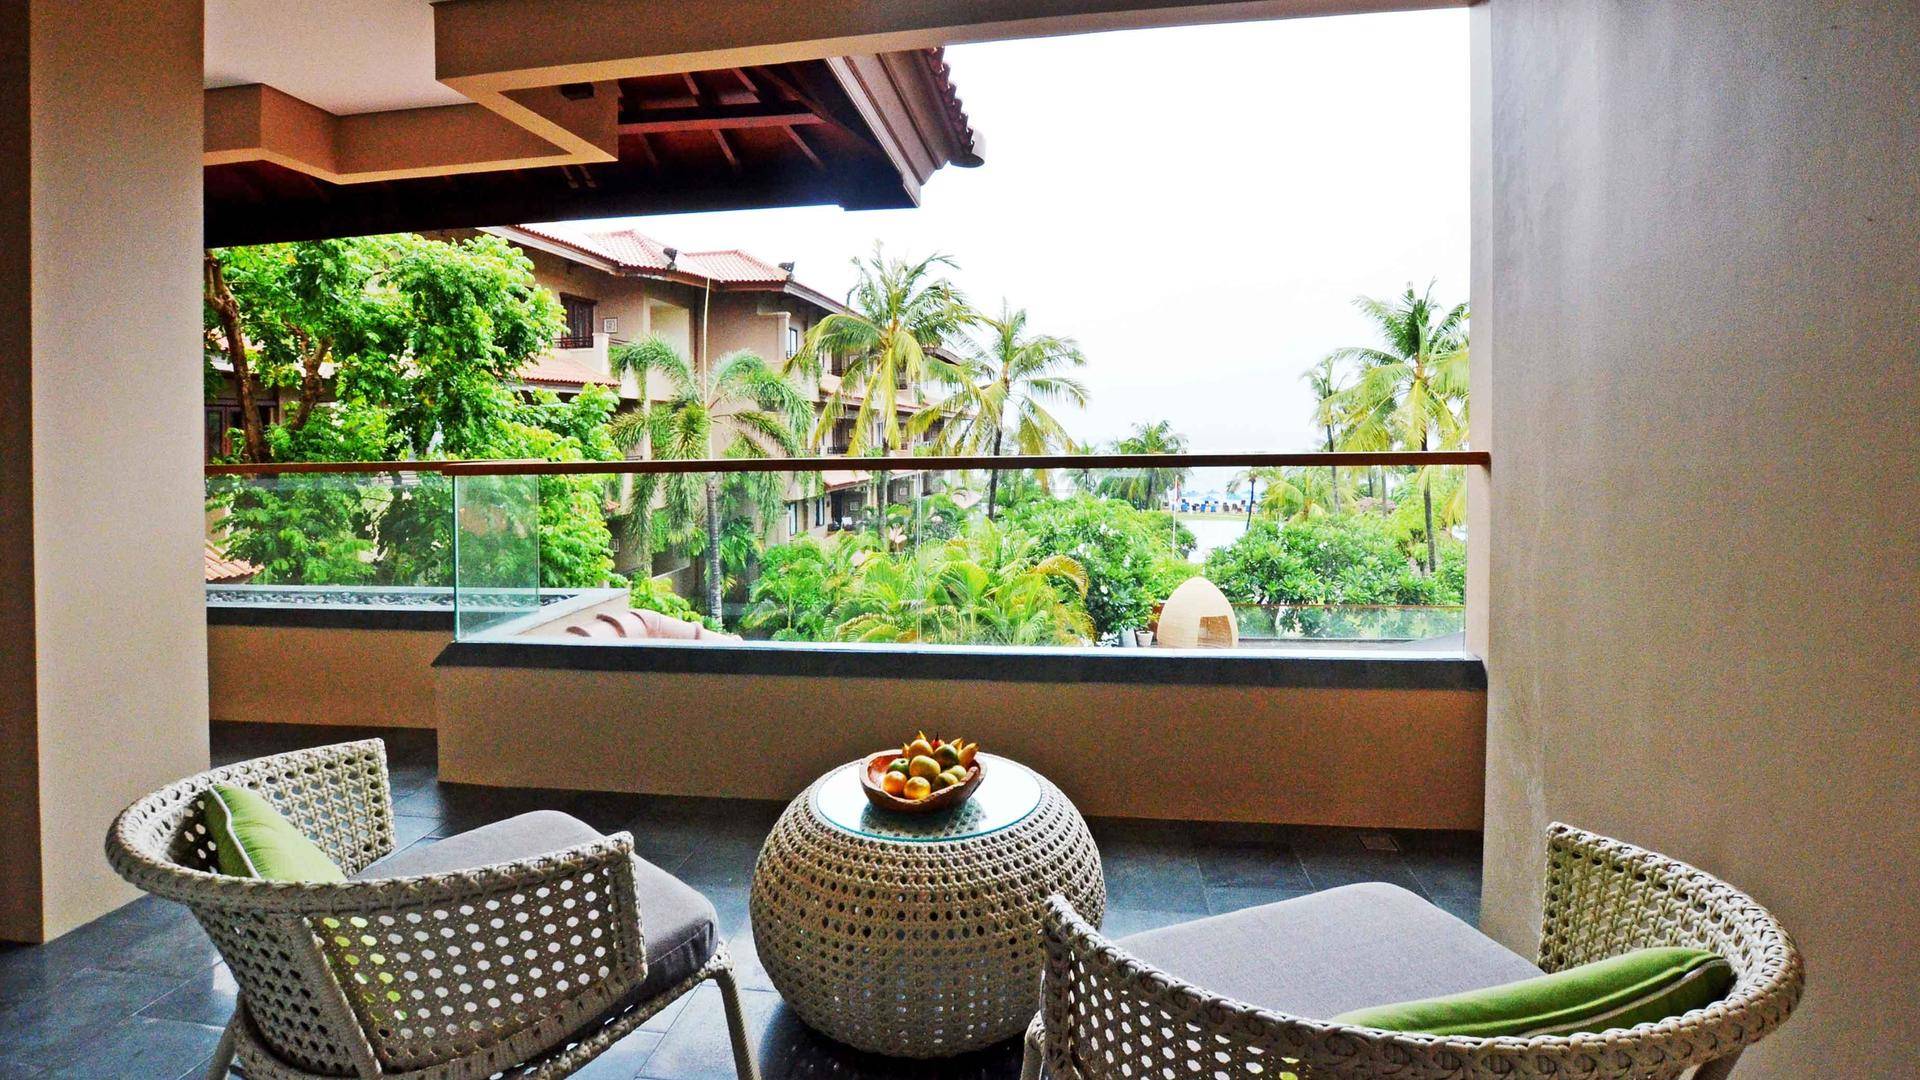 Отель oasis benoa beach resort & spa 4**** (танжунг беноа / индонезия) - отзывы туристов о гостинице описание номеров с фото